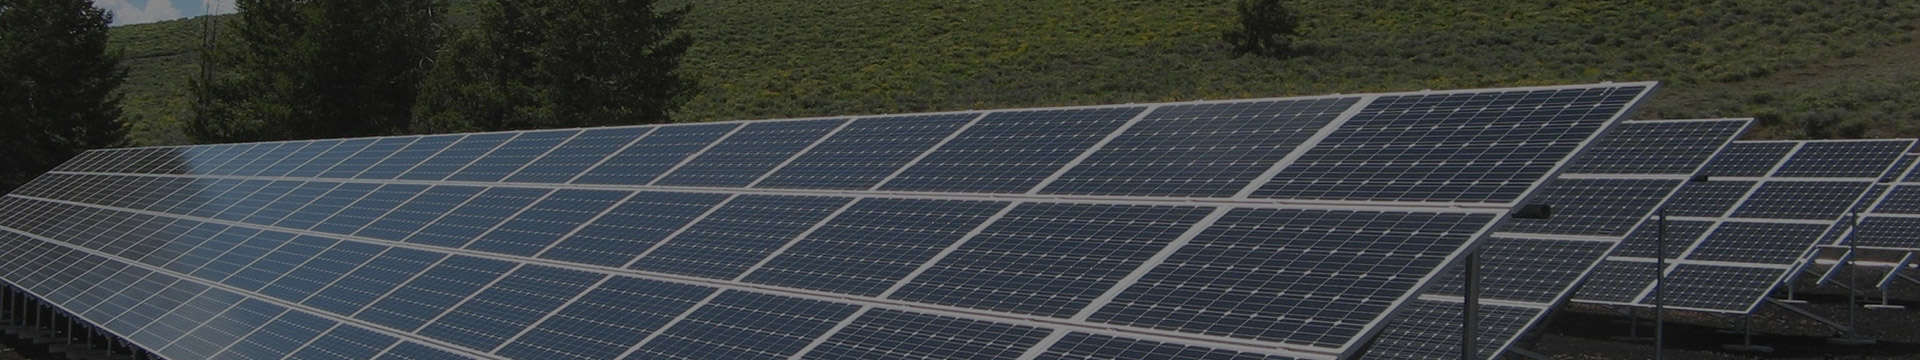 445-460 Watt Solar Panel